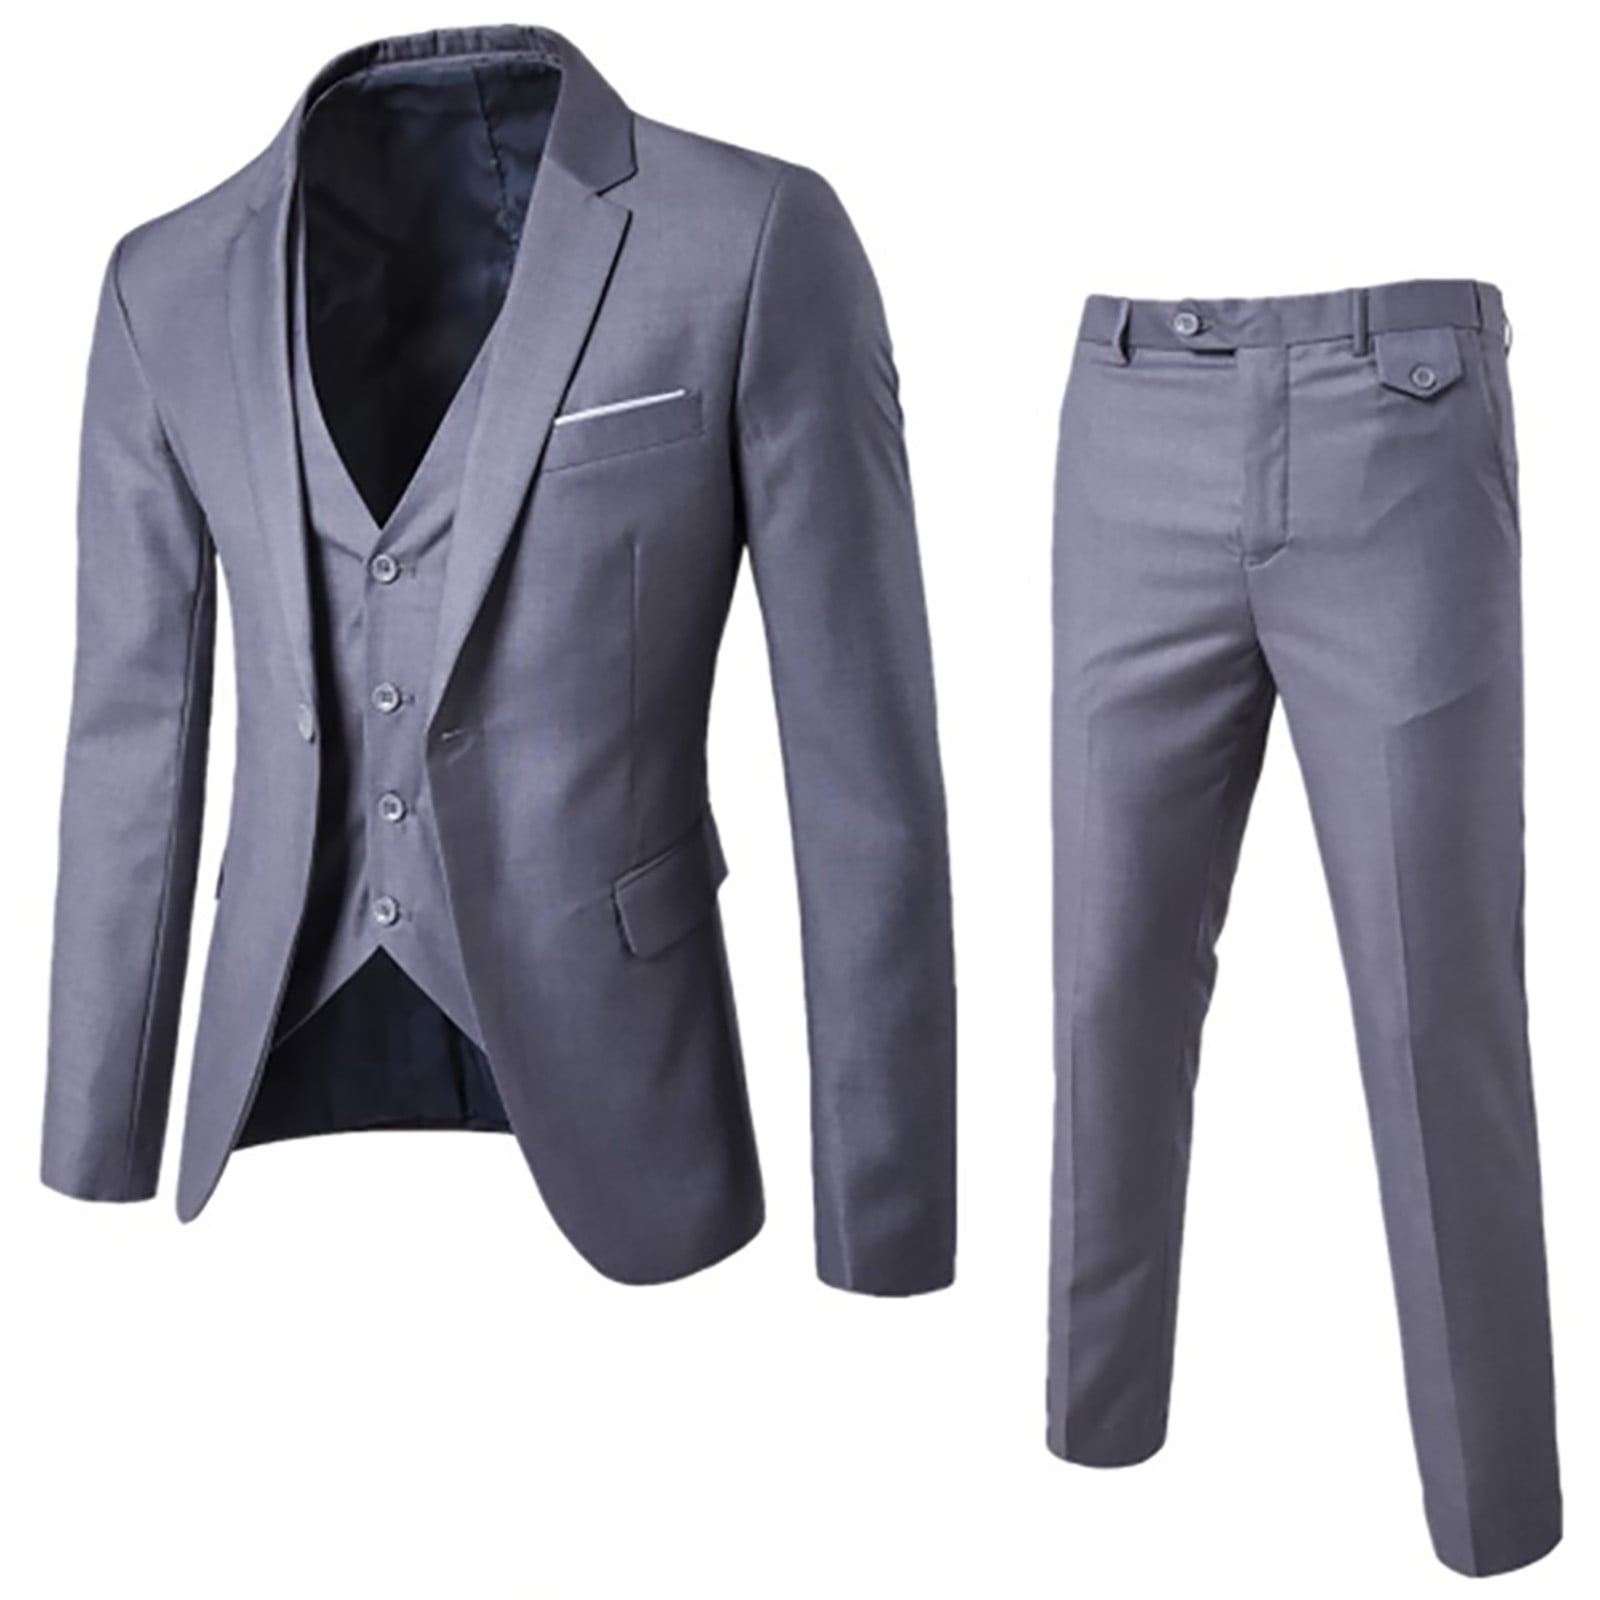 QIPOPIQ Clearance Mens Stylish 3 Piece Dress Suit Men's Blazer